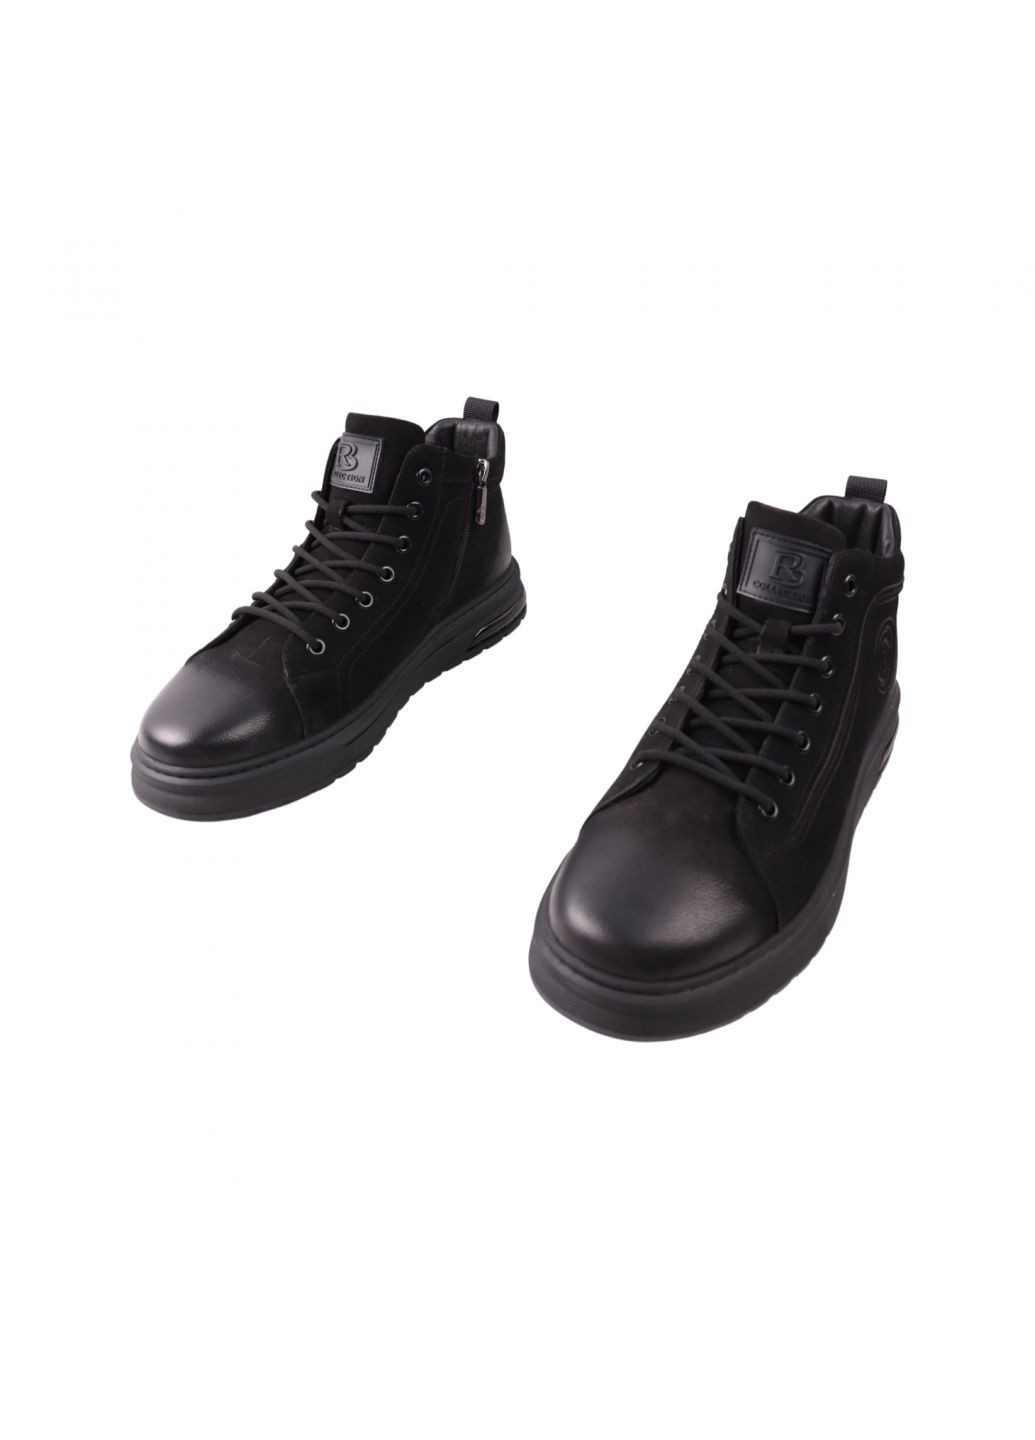 Черные ботинки мужские черные натуральный нубук Berisstini